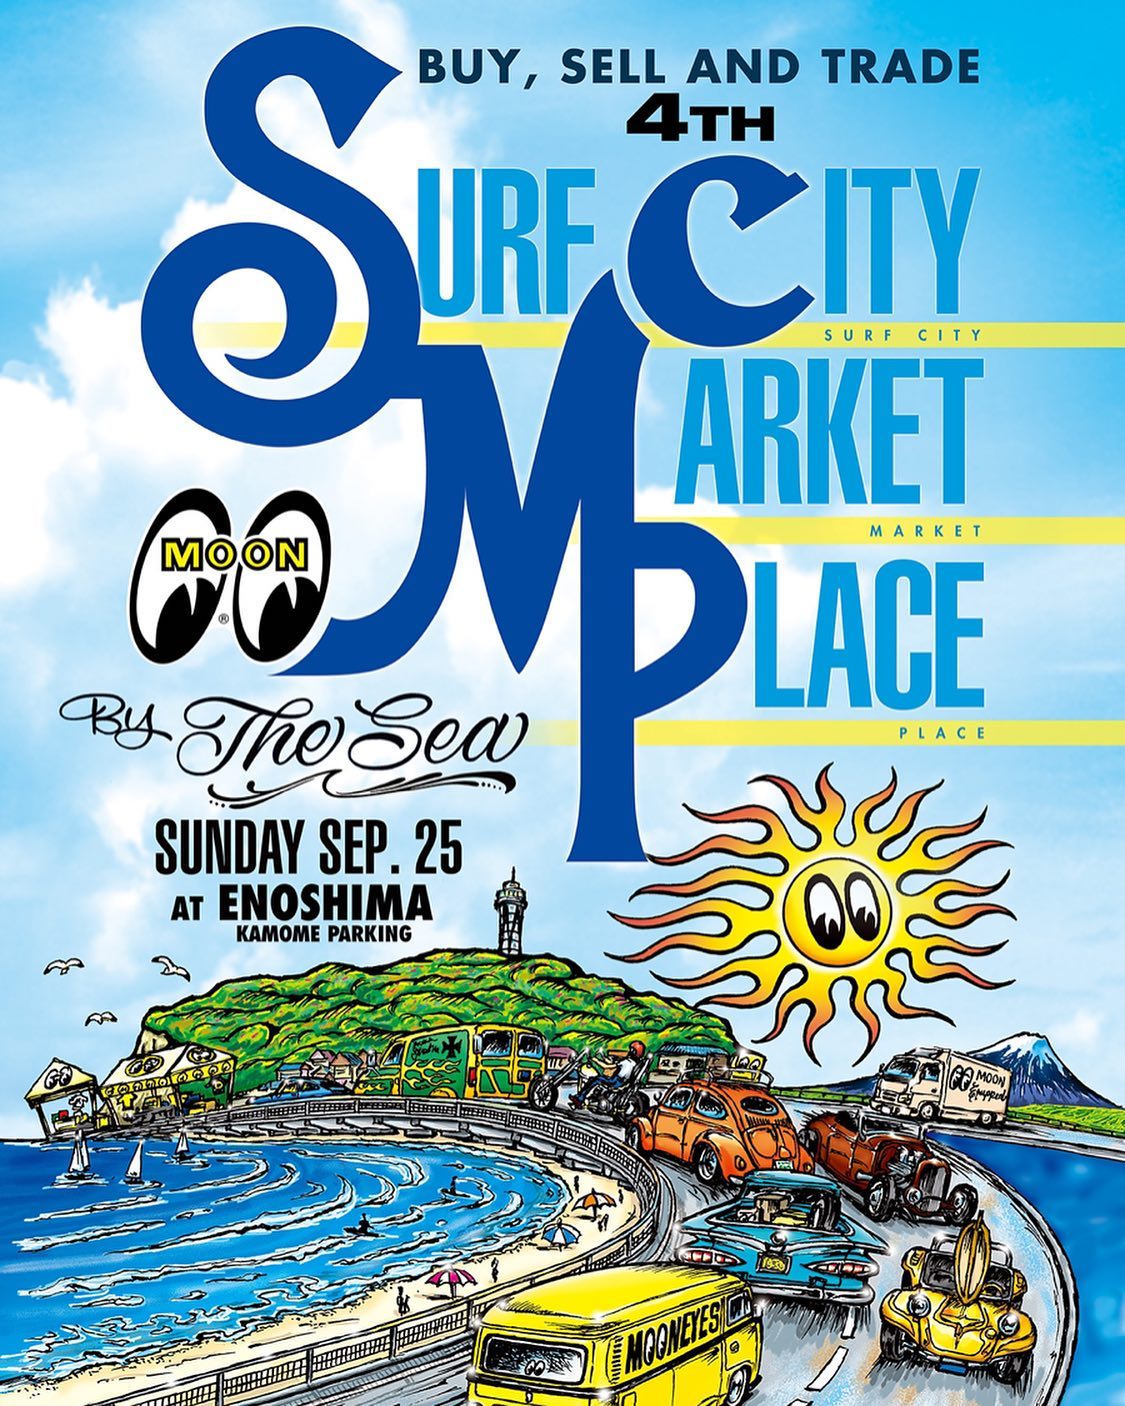 9月25日江の島で開催されますMooneyes4th Surf City Market Placeブース出展致します！クルージングにも観光にもロケーション良いので会場でお待ちしてます️#mooneyes #scmp #江の島 #swapmeet #dmc